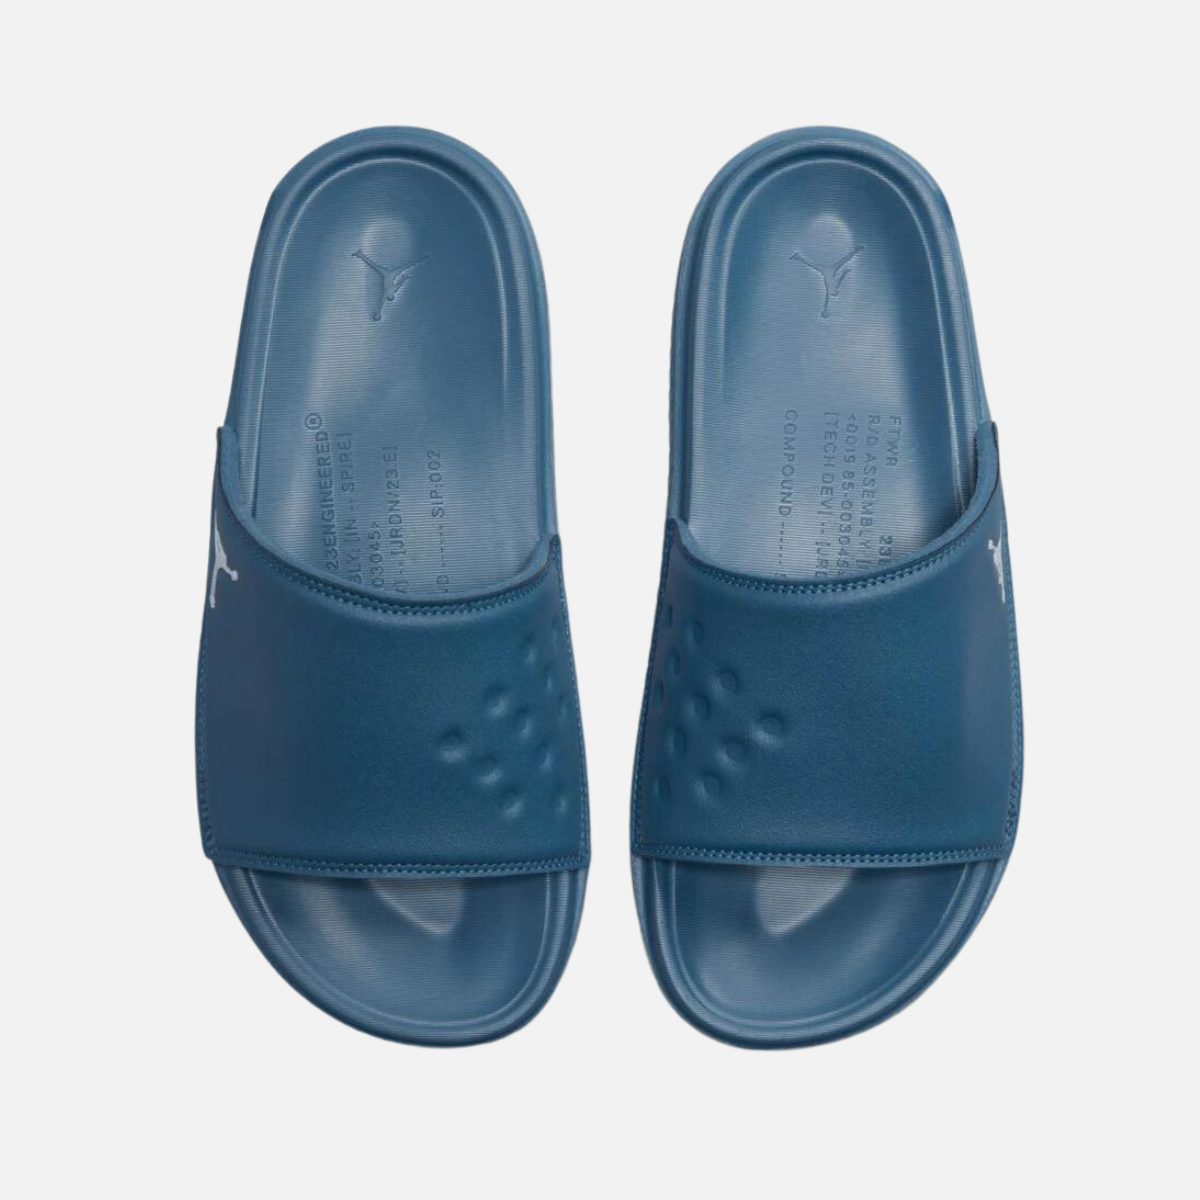 Nike Jordan Play Men's Slide -TRUE BLUE/WHITE